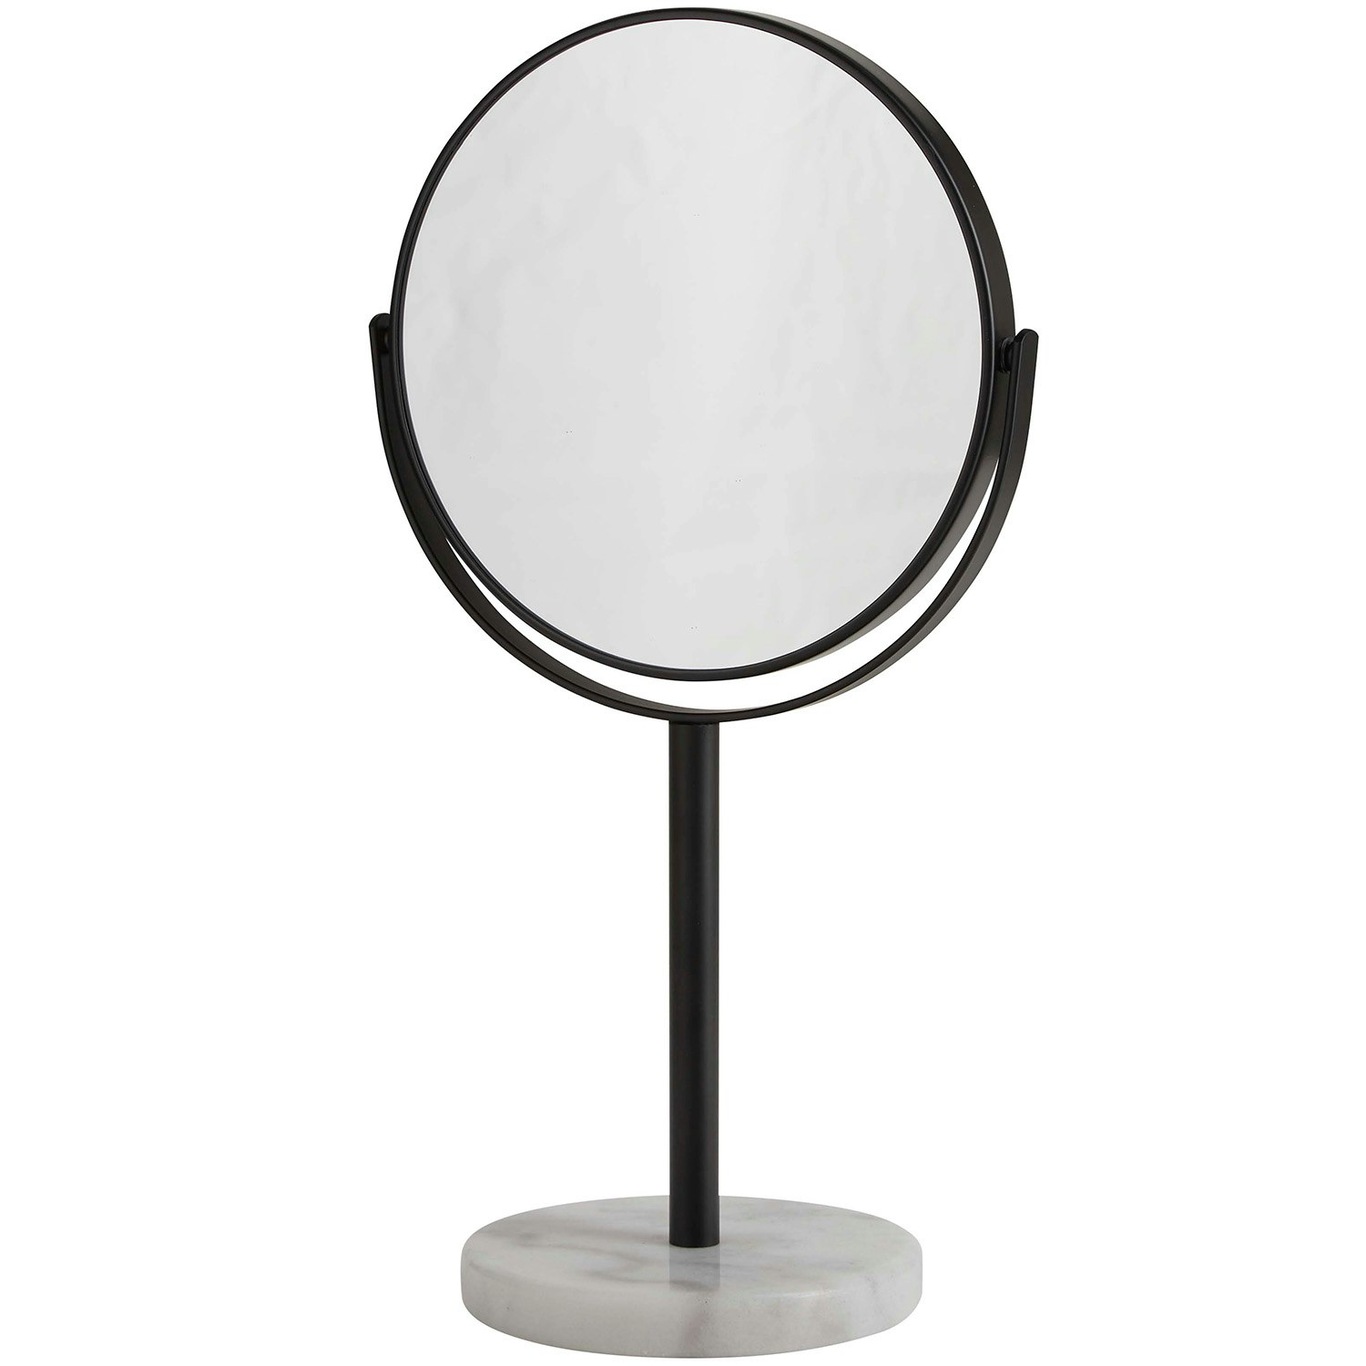 Bordspejl H34 x Ø20 cm, Sort/Hvidt